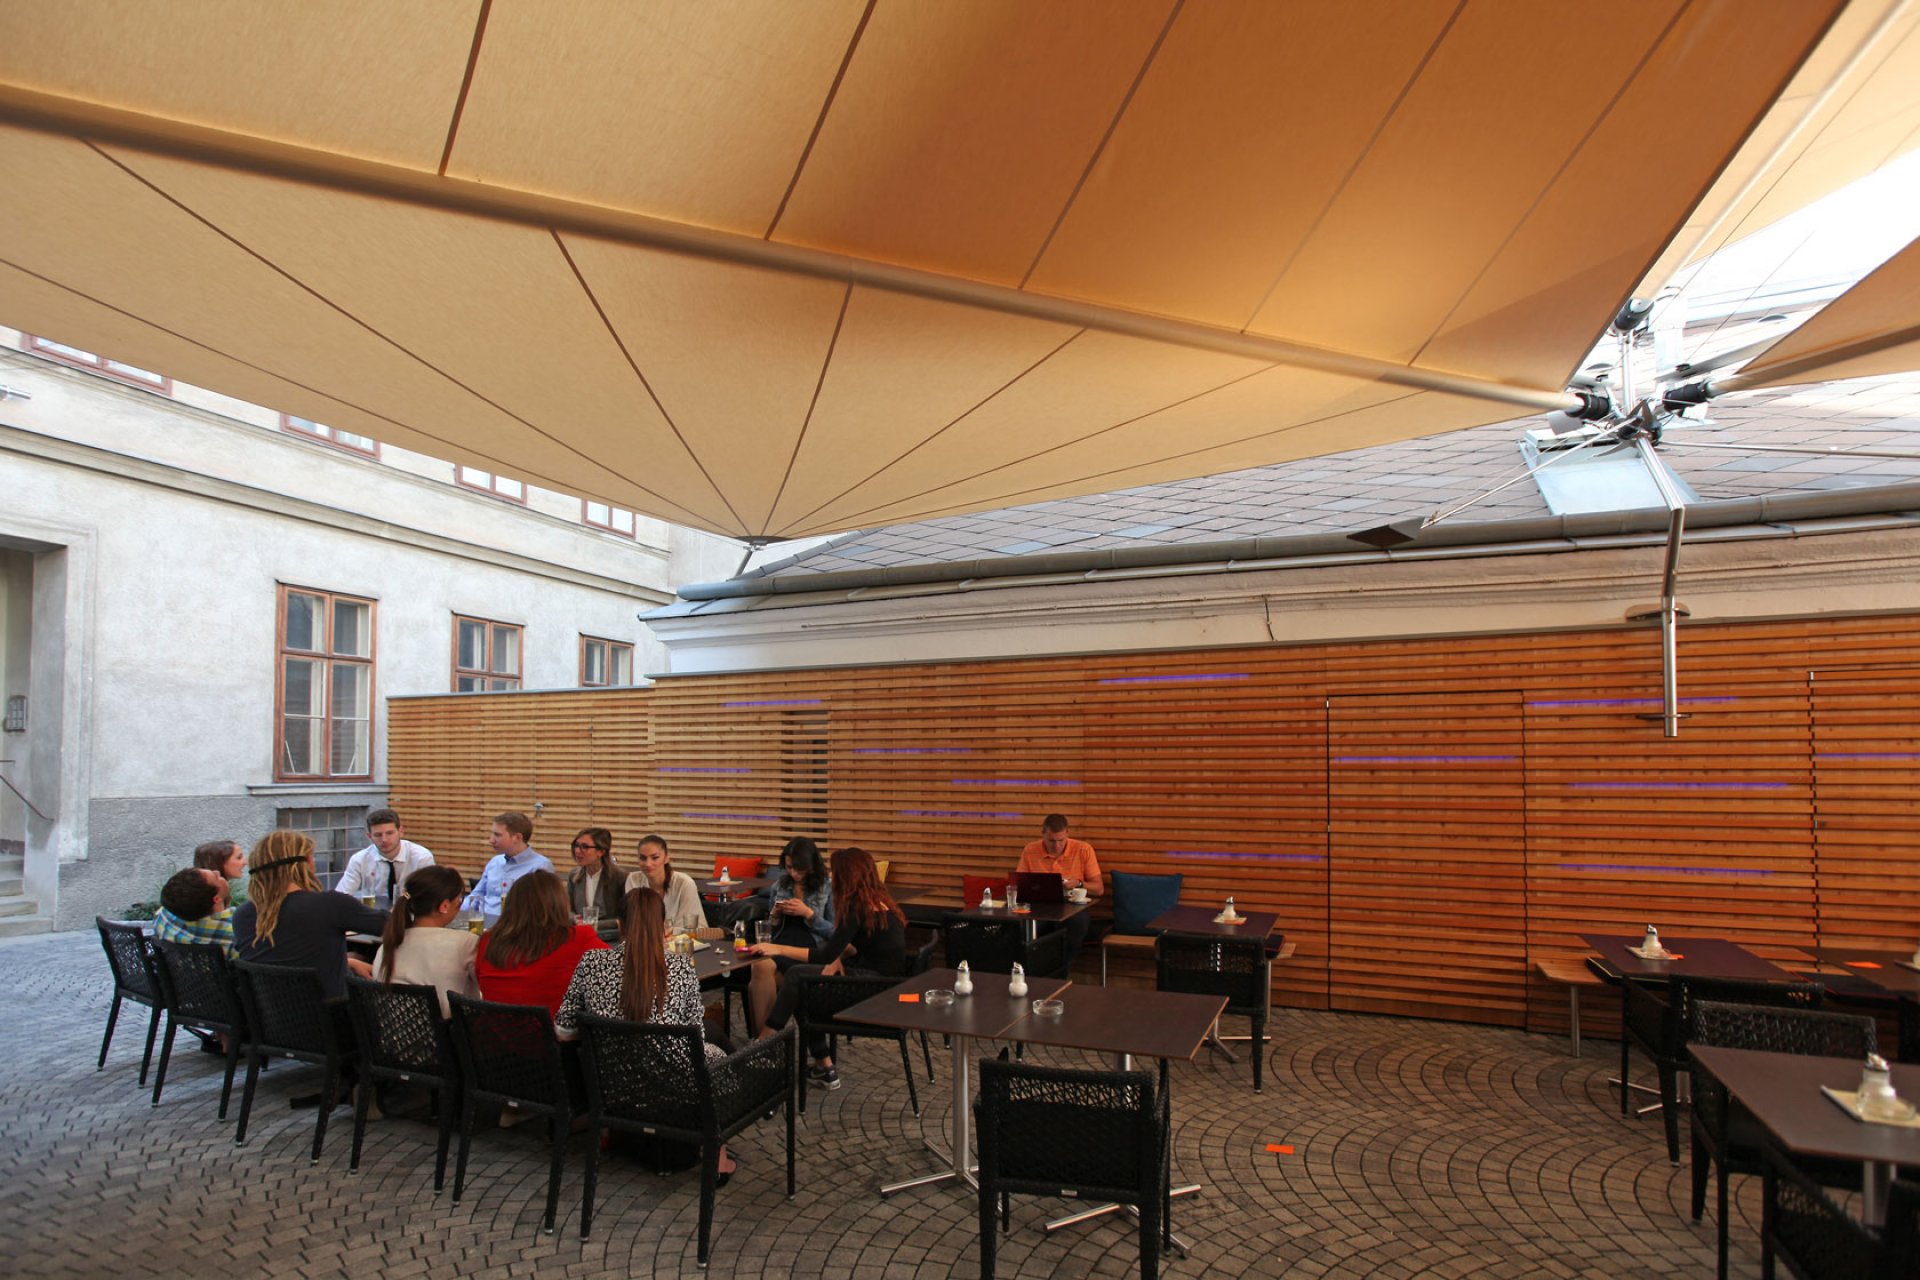 SunSquare mehrfach Dreiecksegel-Anlage für Caffè Latte in Wien.